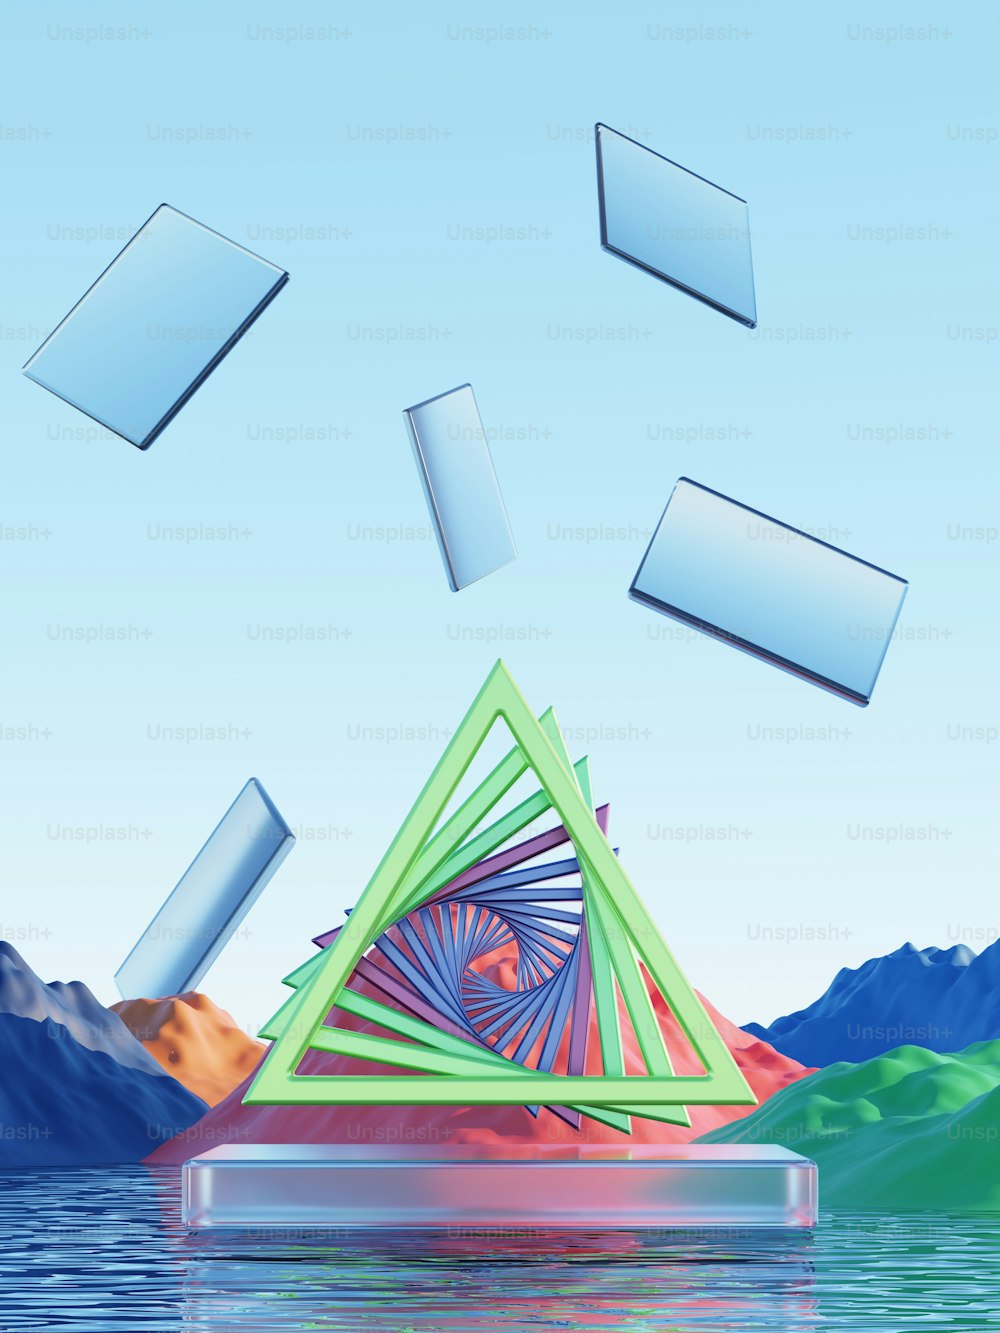 Un'immagine generata al computer di una piramide che galleggia nell'acqua